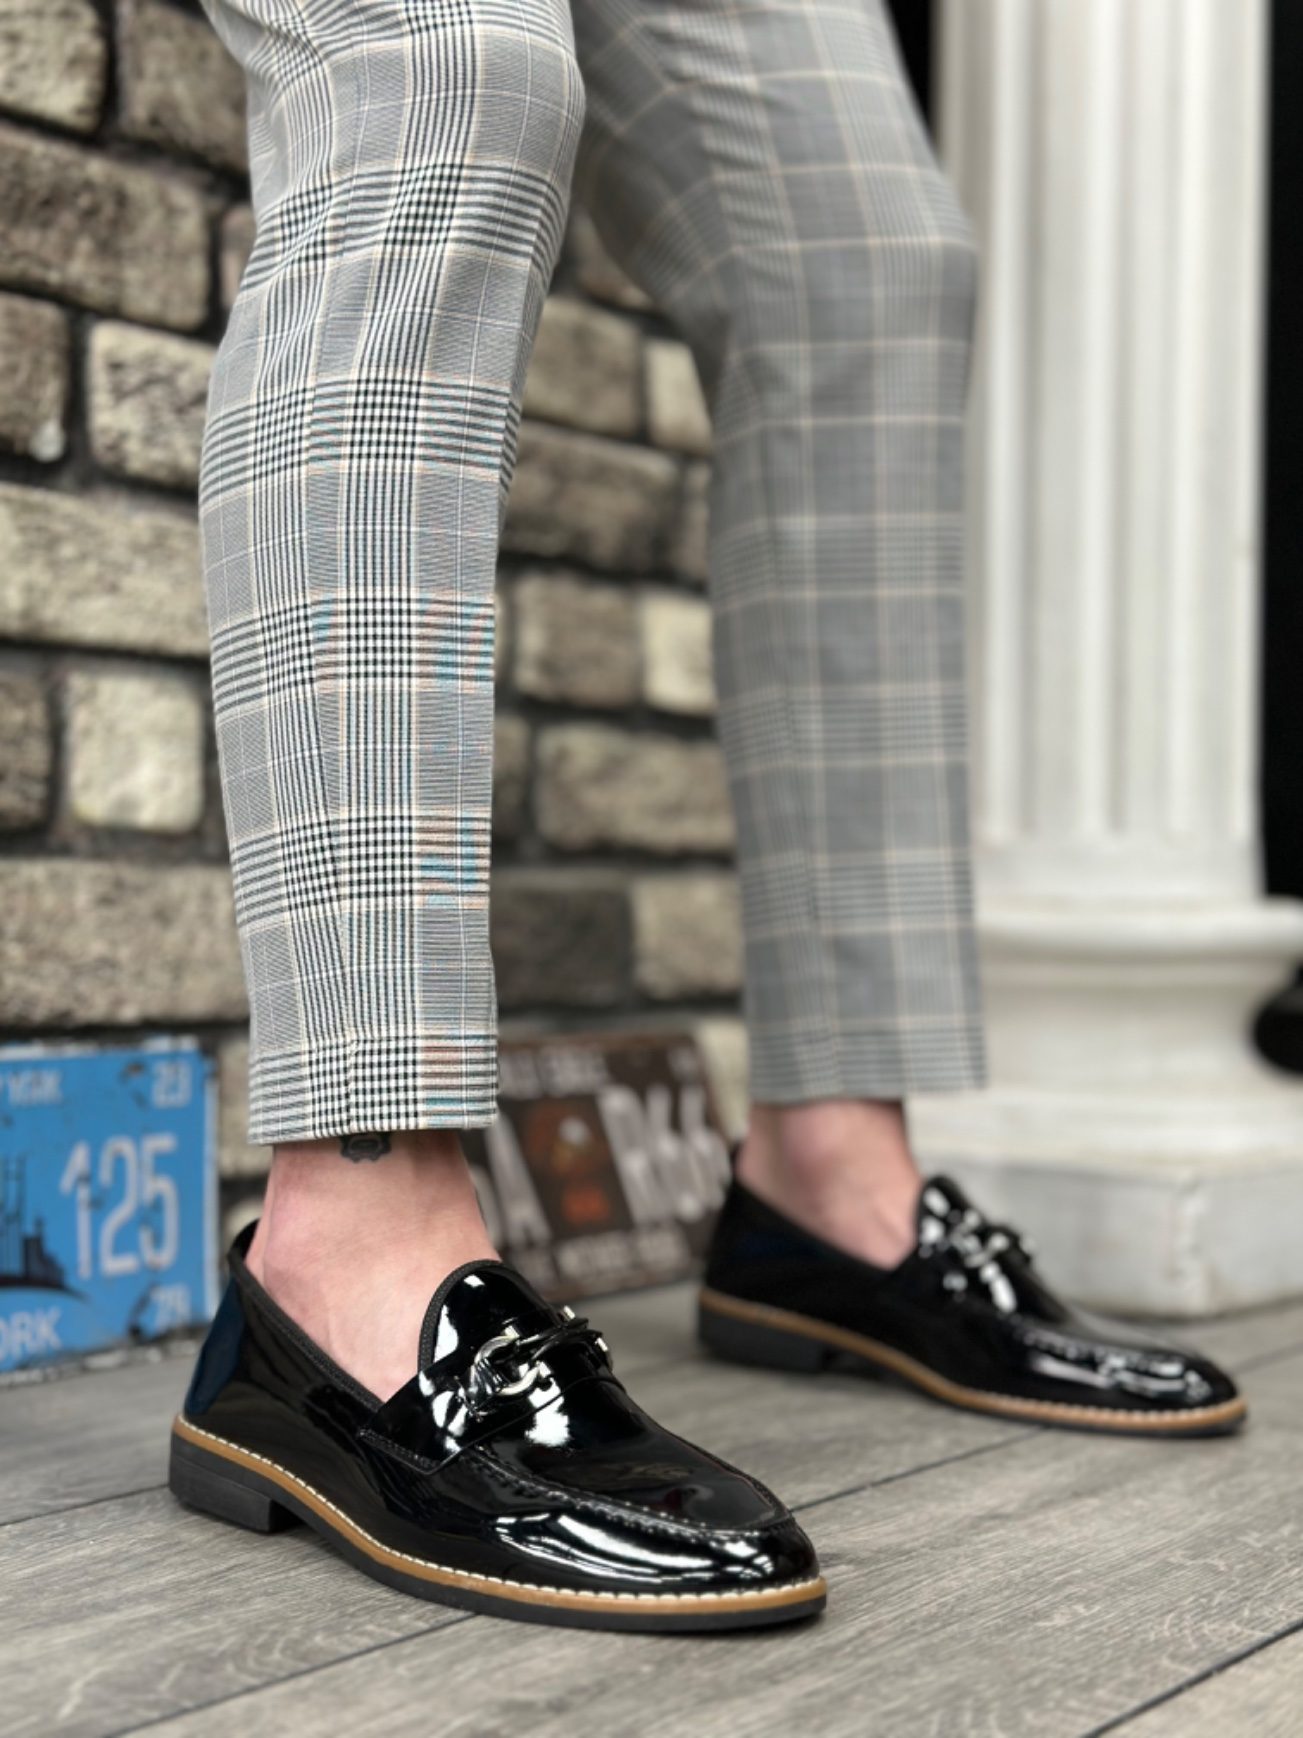 CLZ946 Rugan Püsküllü Corcik Siyah Çengel Tokalı Klasik Erkek Ayakkabısı